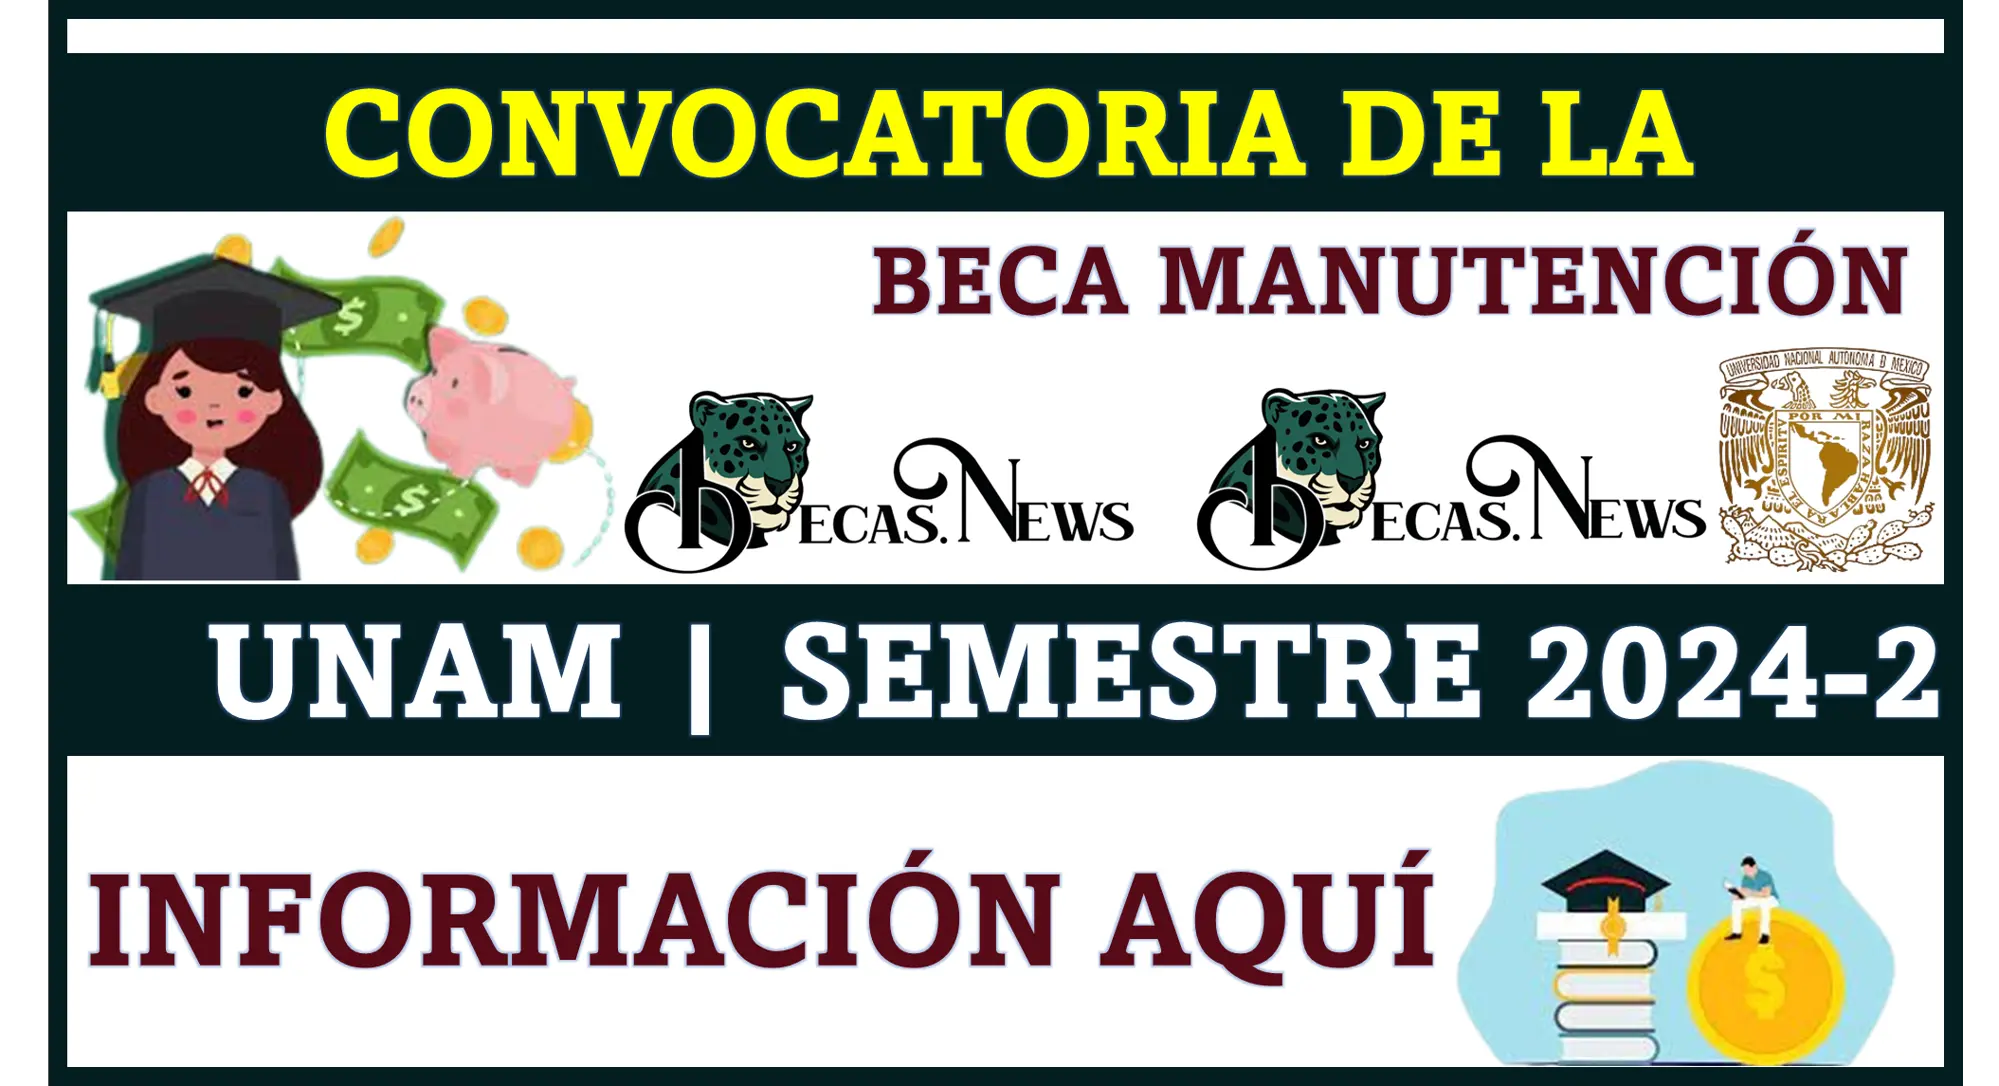 CONVOCATORIA DE LA BECA MANUTENCIÓN UNAM | SEMESTRE 2024-2 | INFORMACIÓN COMPLETA AQUÍ